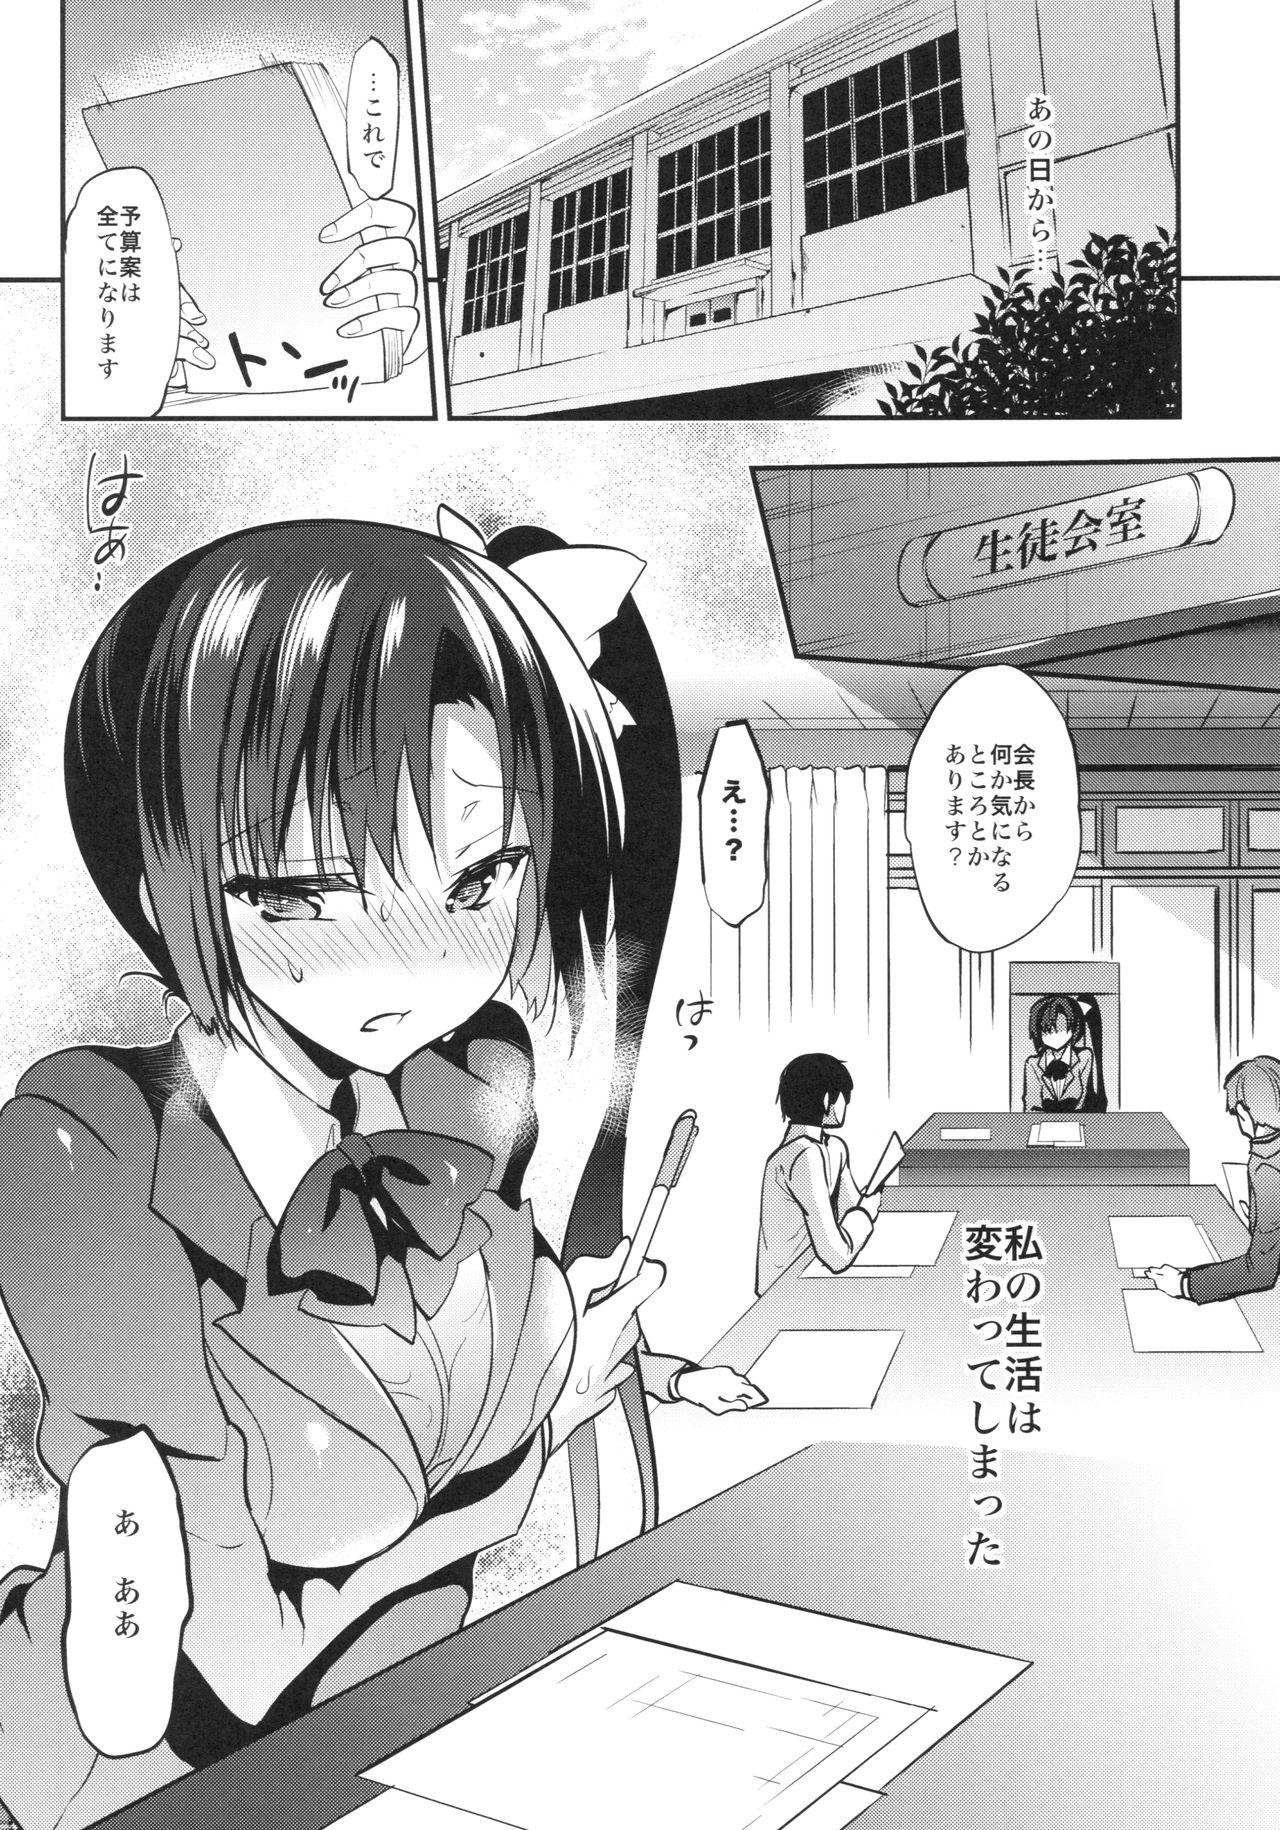 Tits Gakkou de Seishun! 13 Bathroom - Page 4